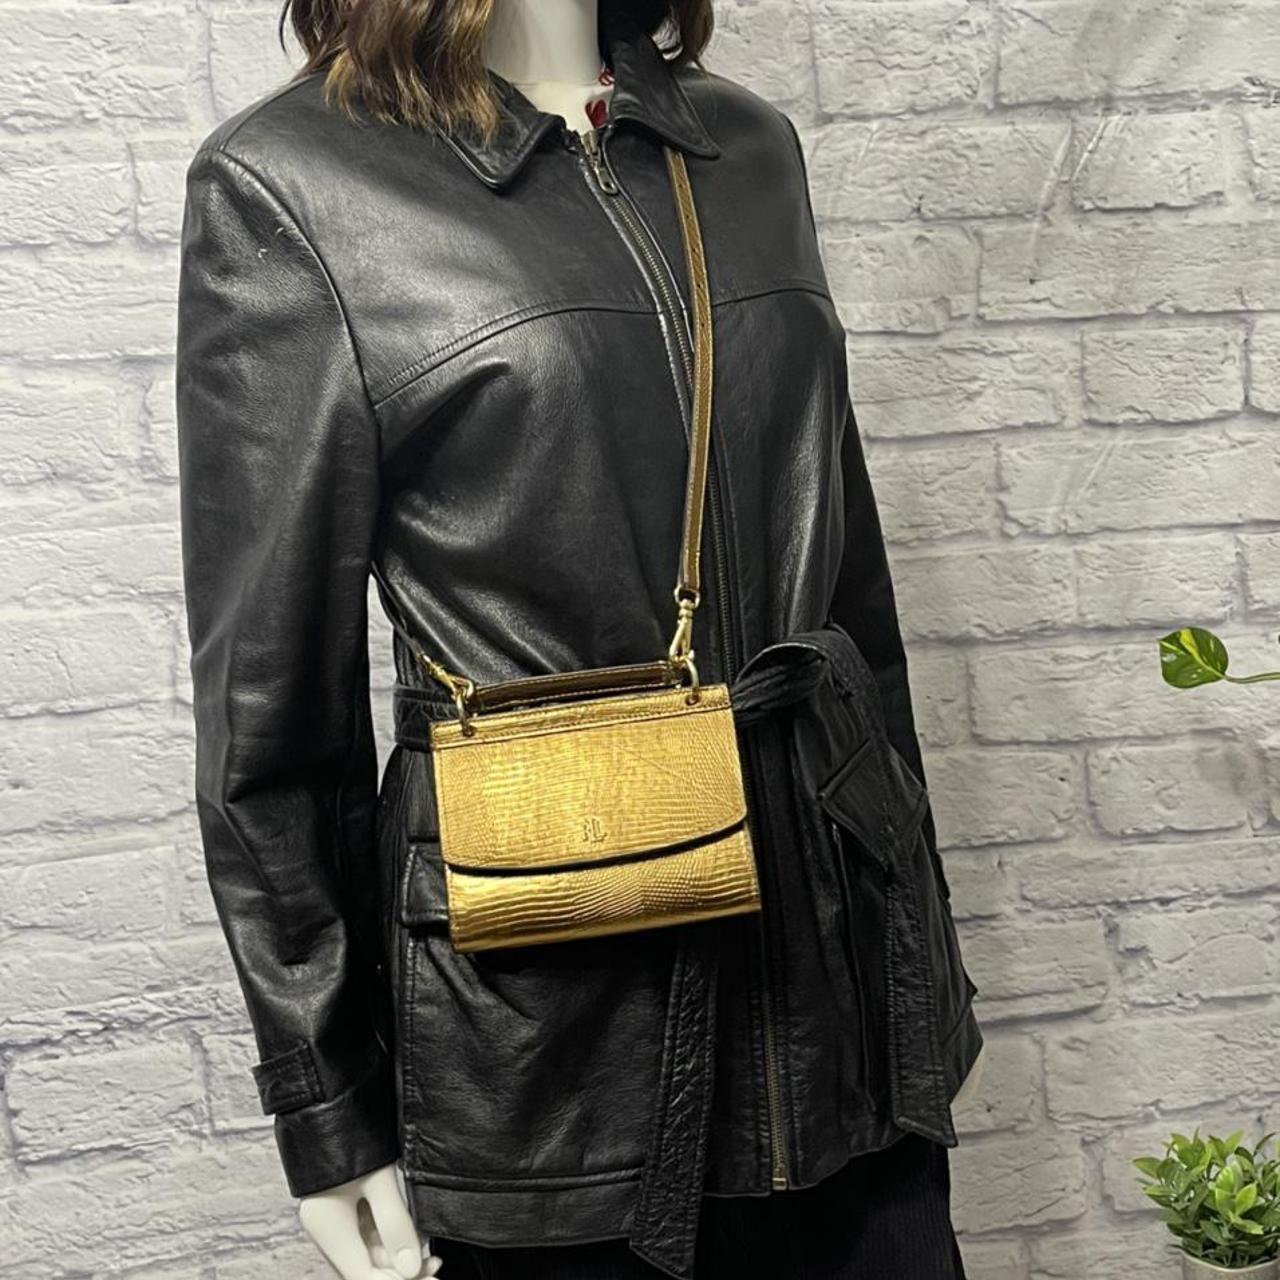 Ralph Lauren Women's Gold and Black Bag